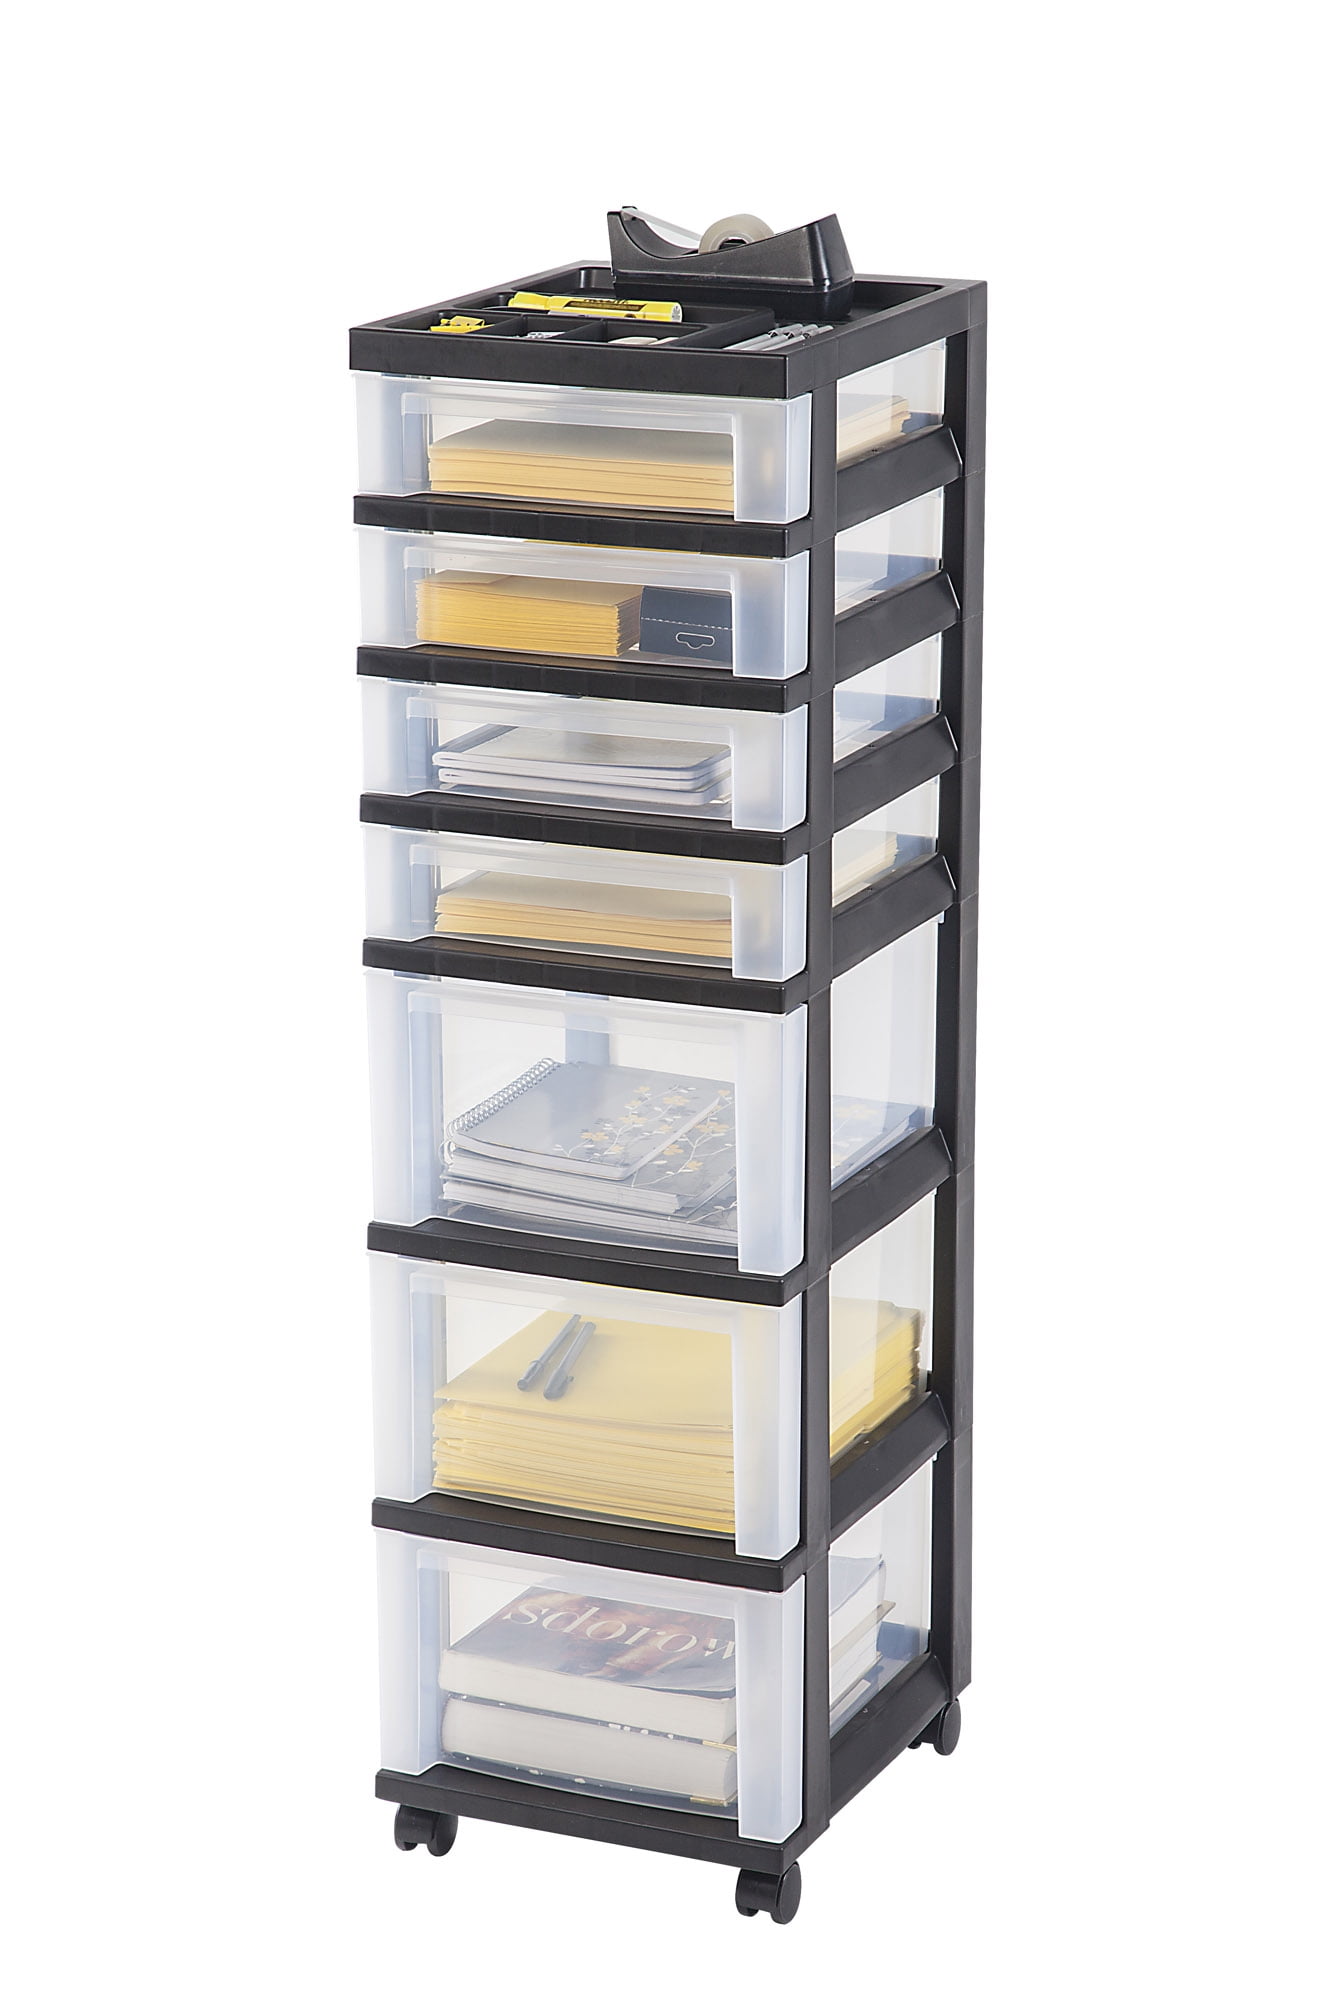 Iris Usa 7 Drawer Storage Cart With Organizer Top Black